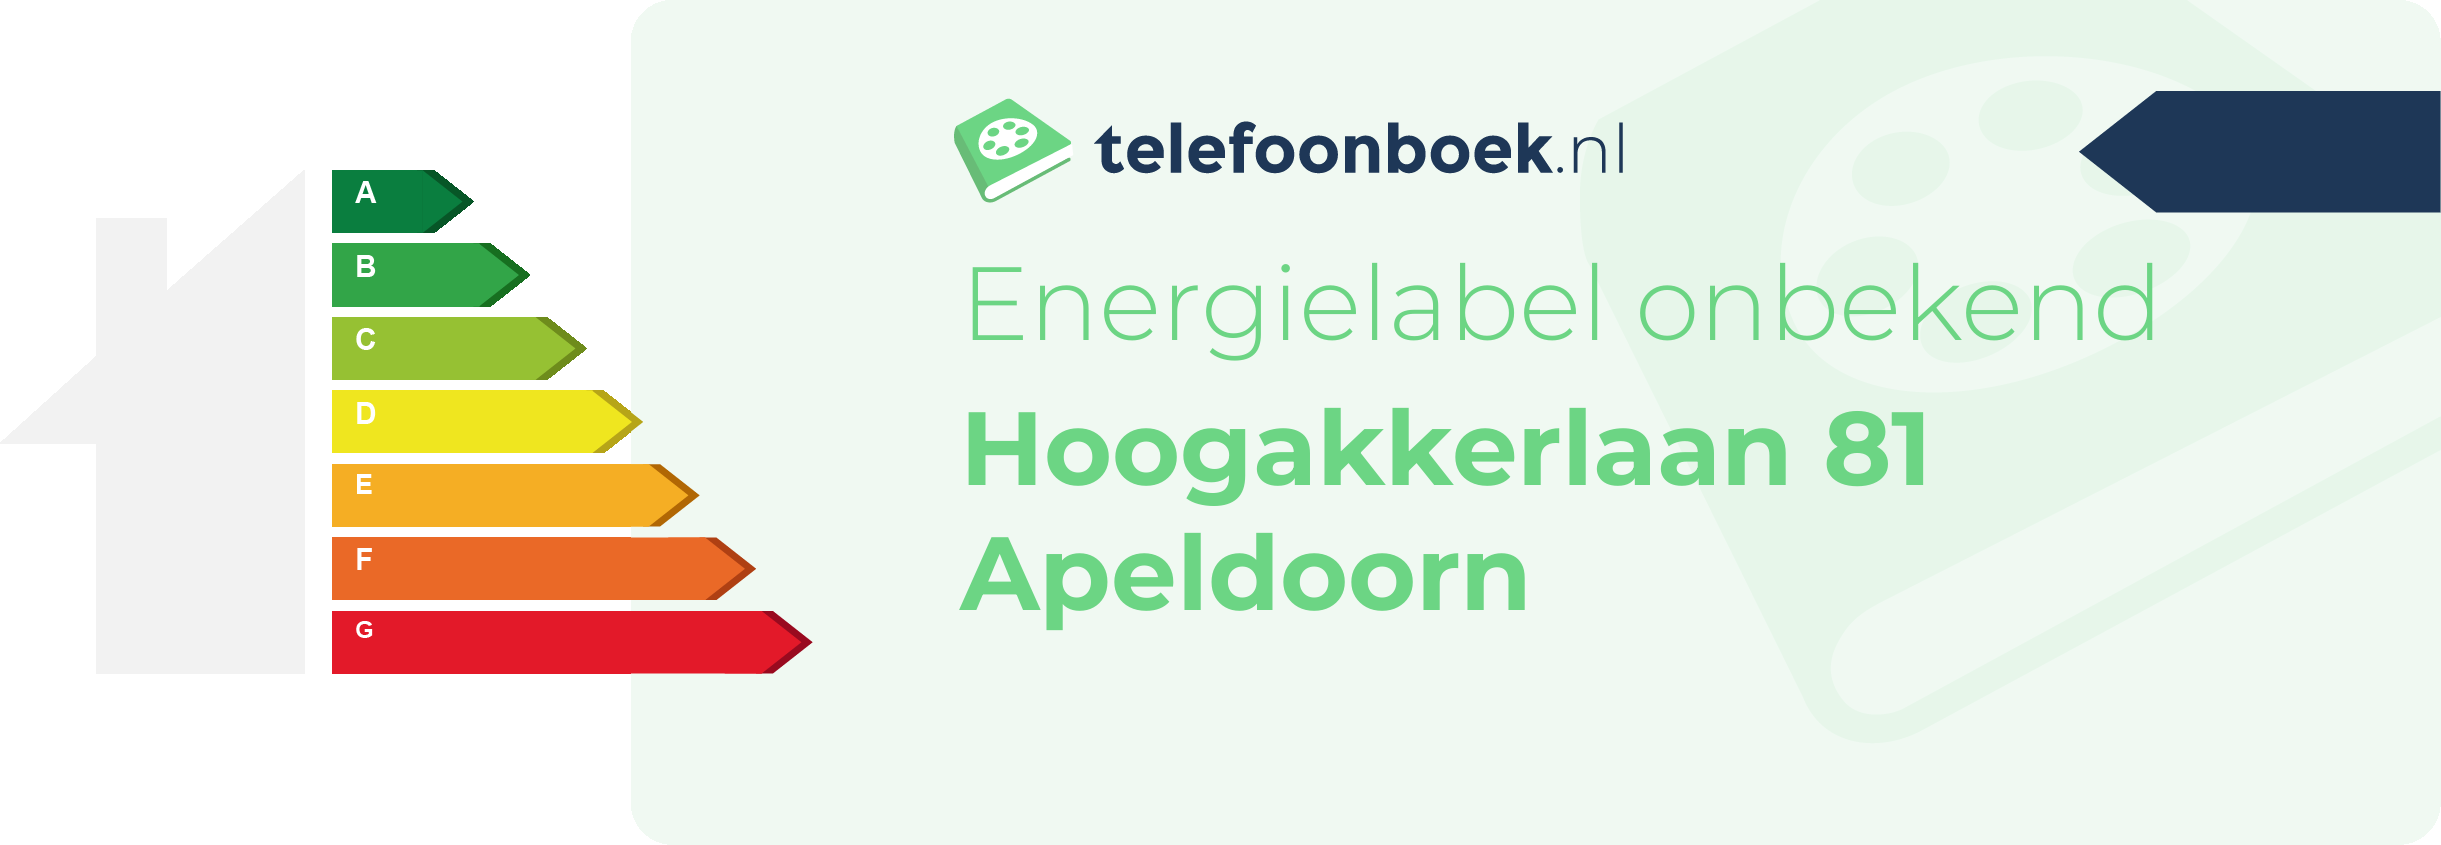 Energielabel Hoogakkerlaan 81 Apeldoorn